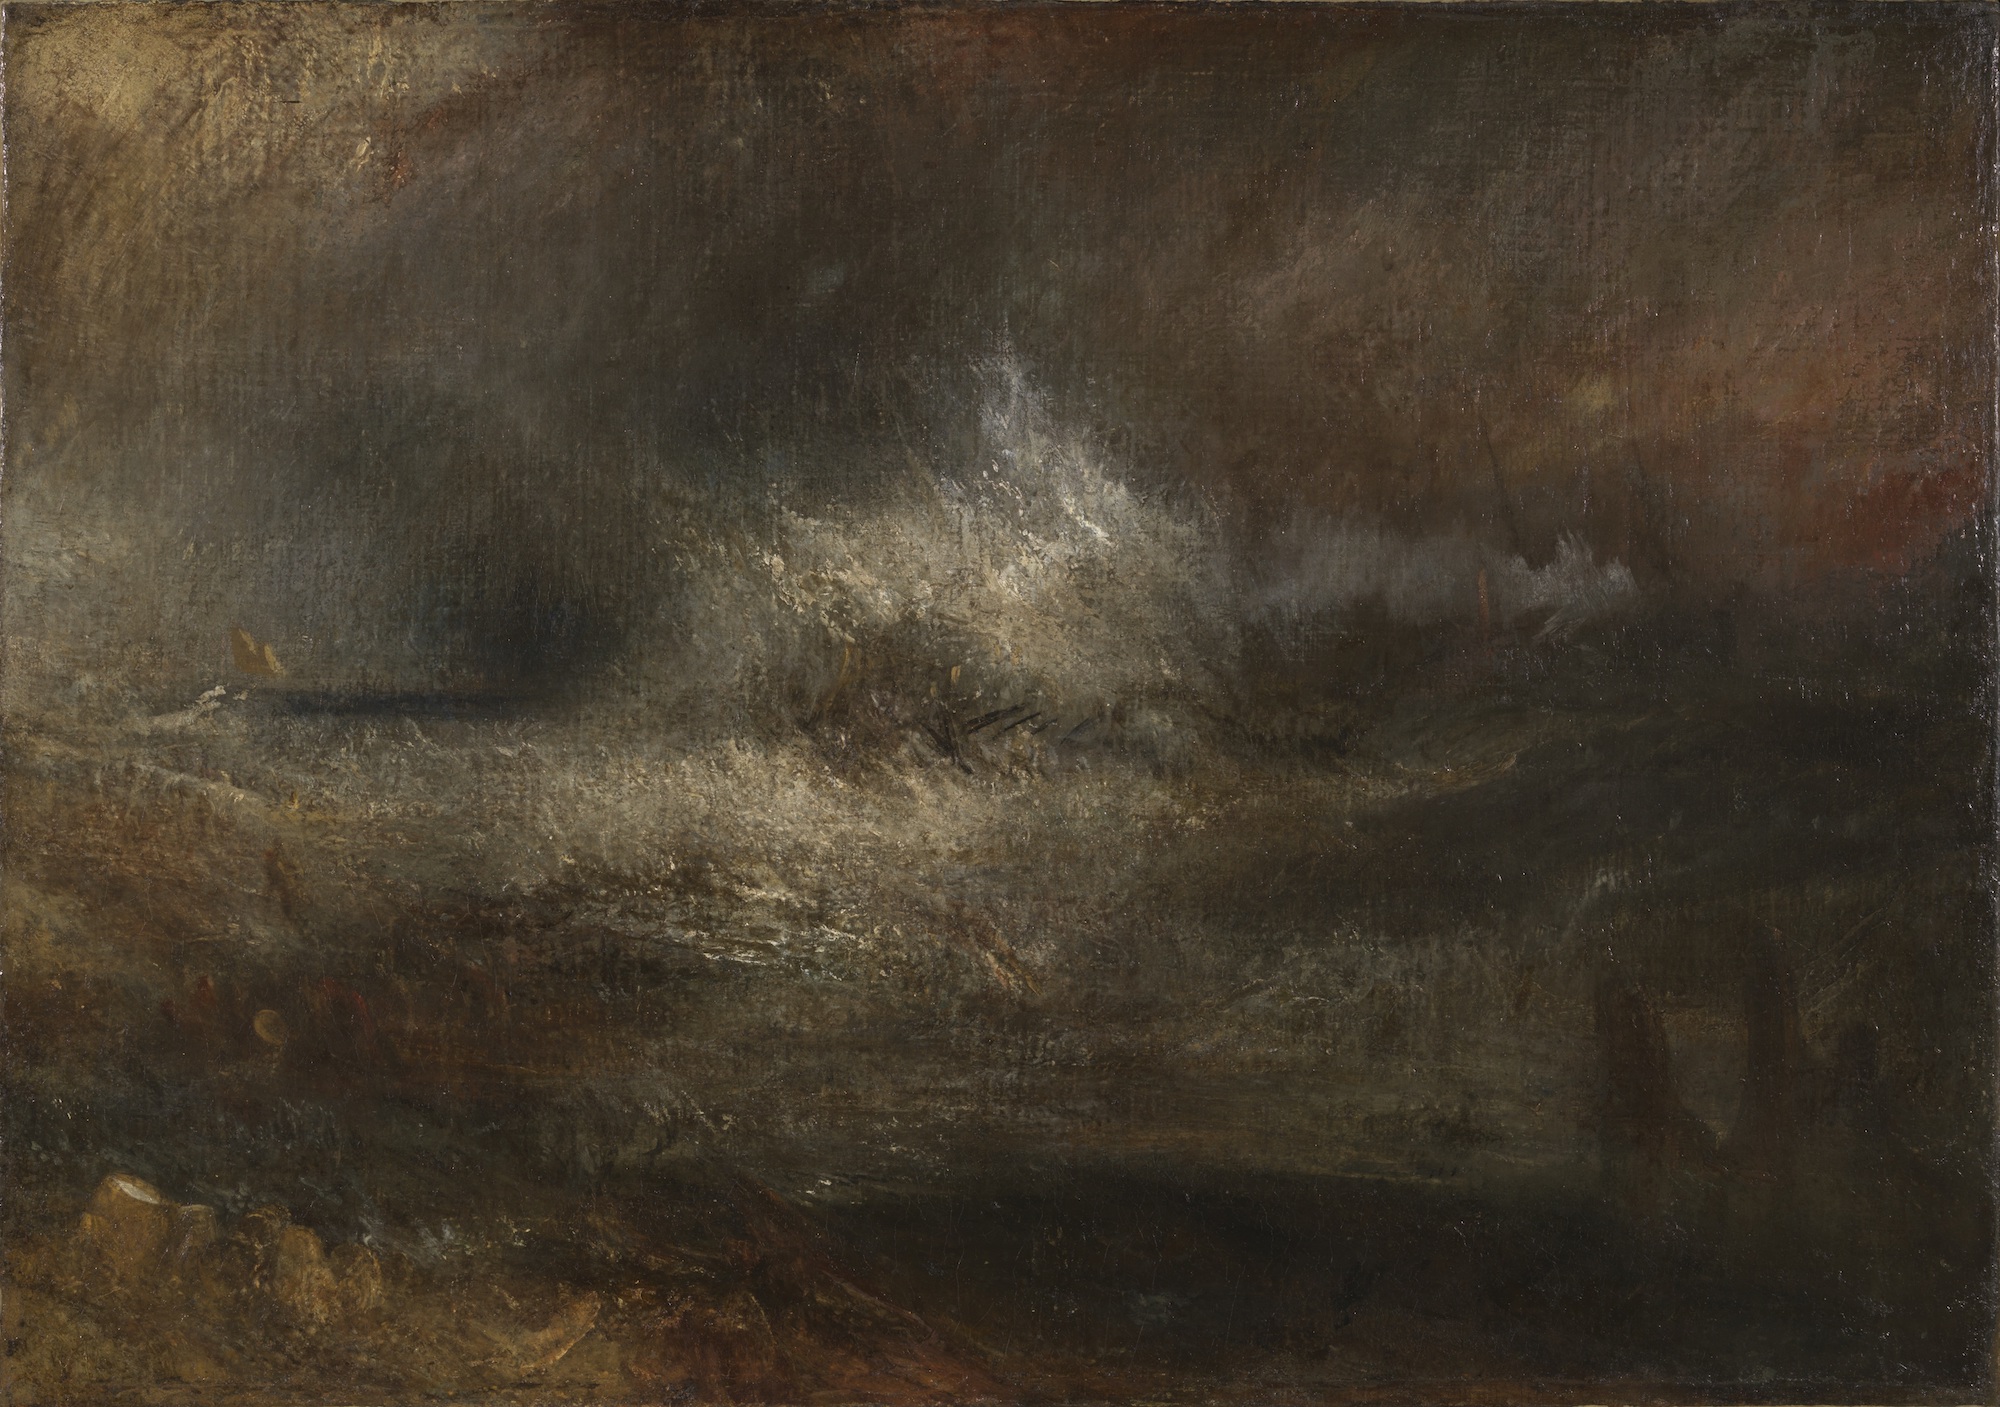 Joseph Mallord William Turner (1775-1851), Mer agitée avec une épave en flamme, vers 1835-1840. Huile sur toile, 163 x 65 cm. Londres, Tate. Photo service de presse. © Tate